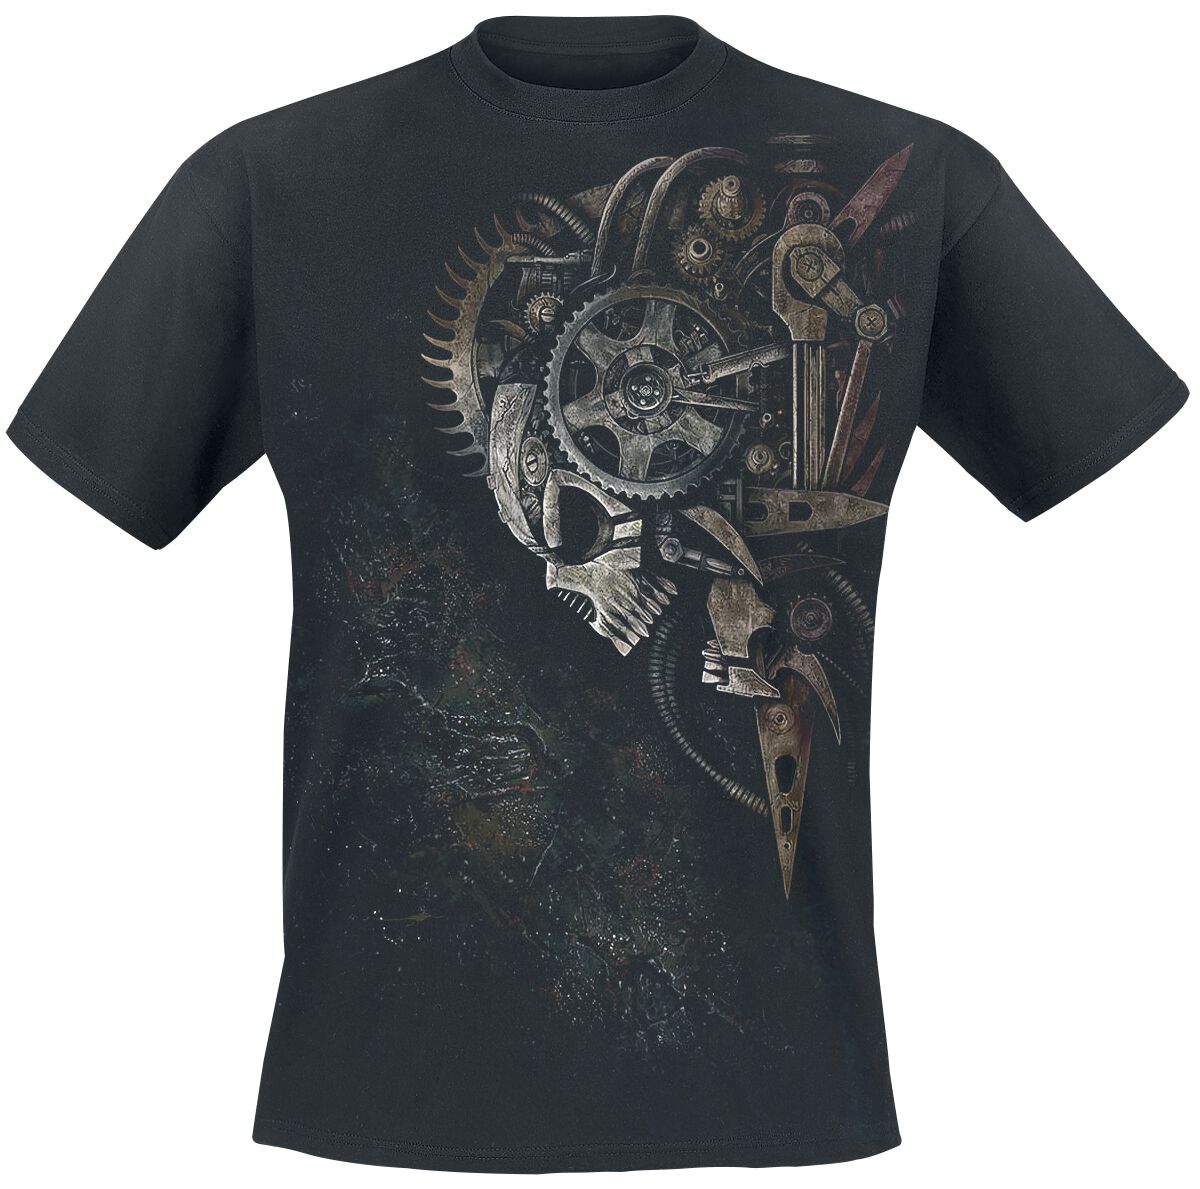 Spiral - Gothic T-Shirt - Diesel Punk - S bis 4XL - für Männer - Größe 4XL - schwarz